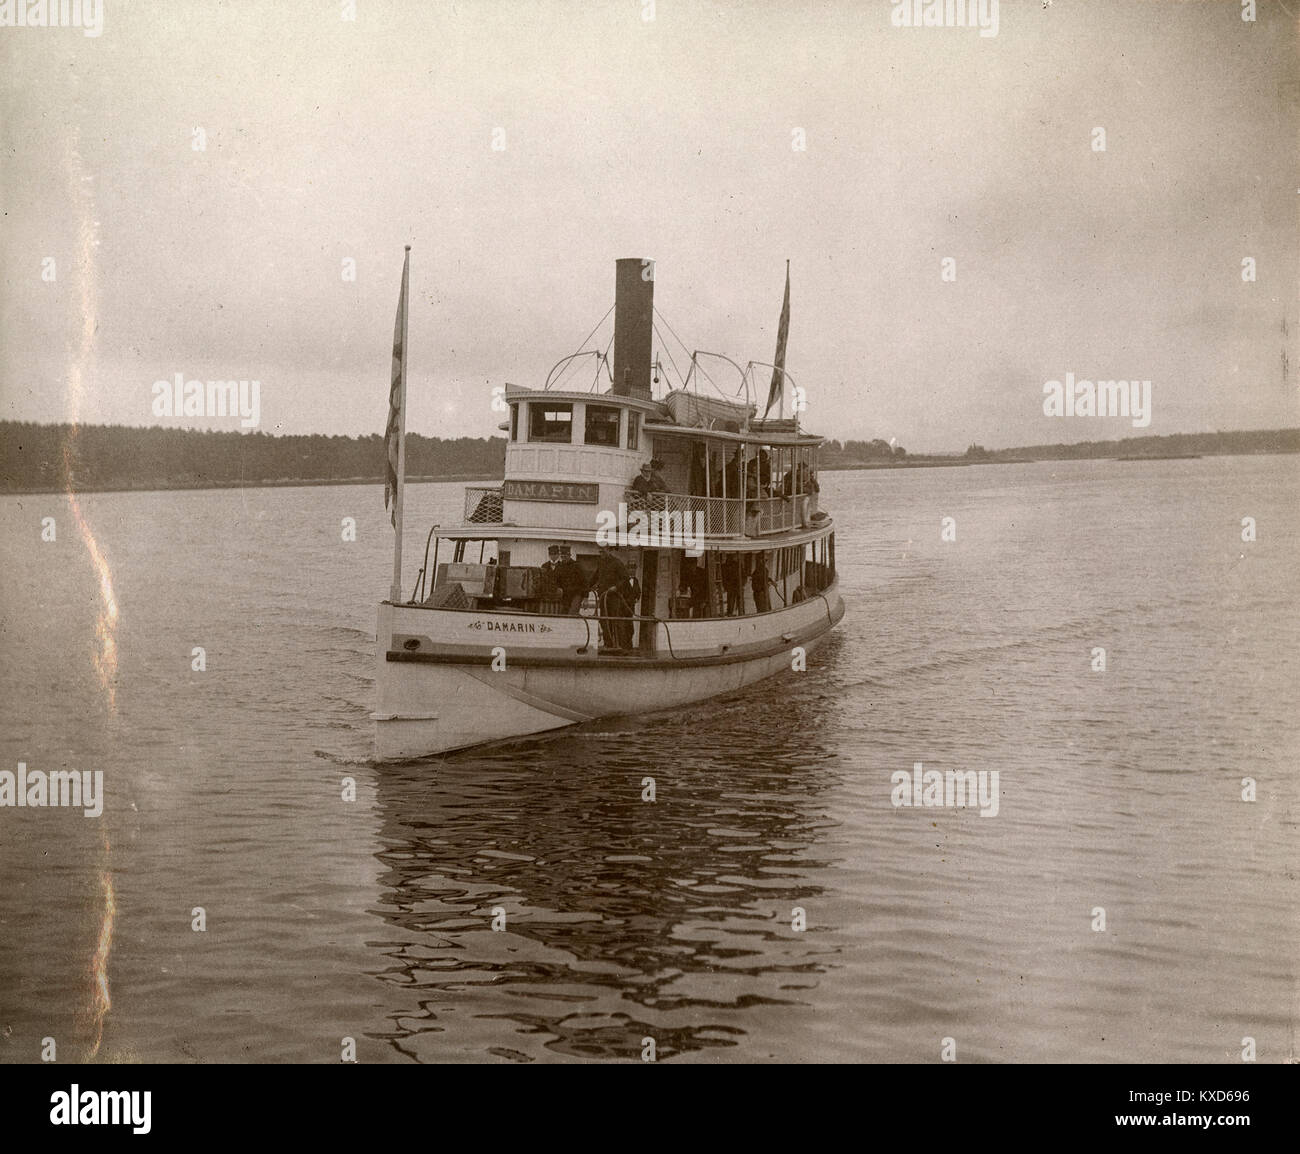 Antique circa 1905 fotografia il piroscafo Damarin avvicinando il wharf a Riggsville (ora Robinhood), Maine in Sagadahoc County, Stati Uniti d'America. Foto Stock